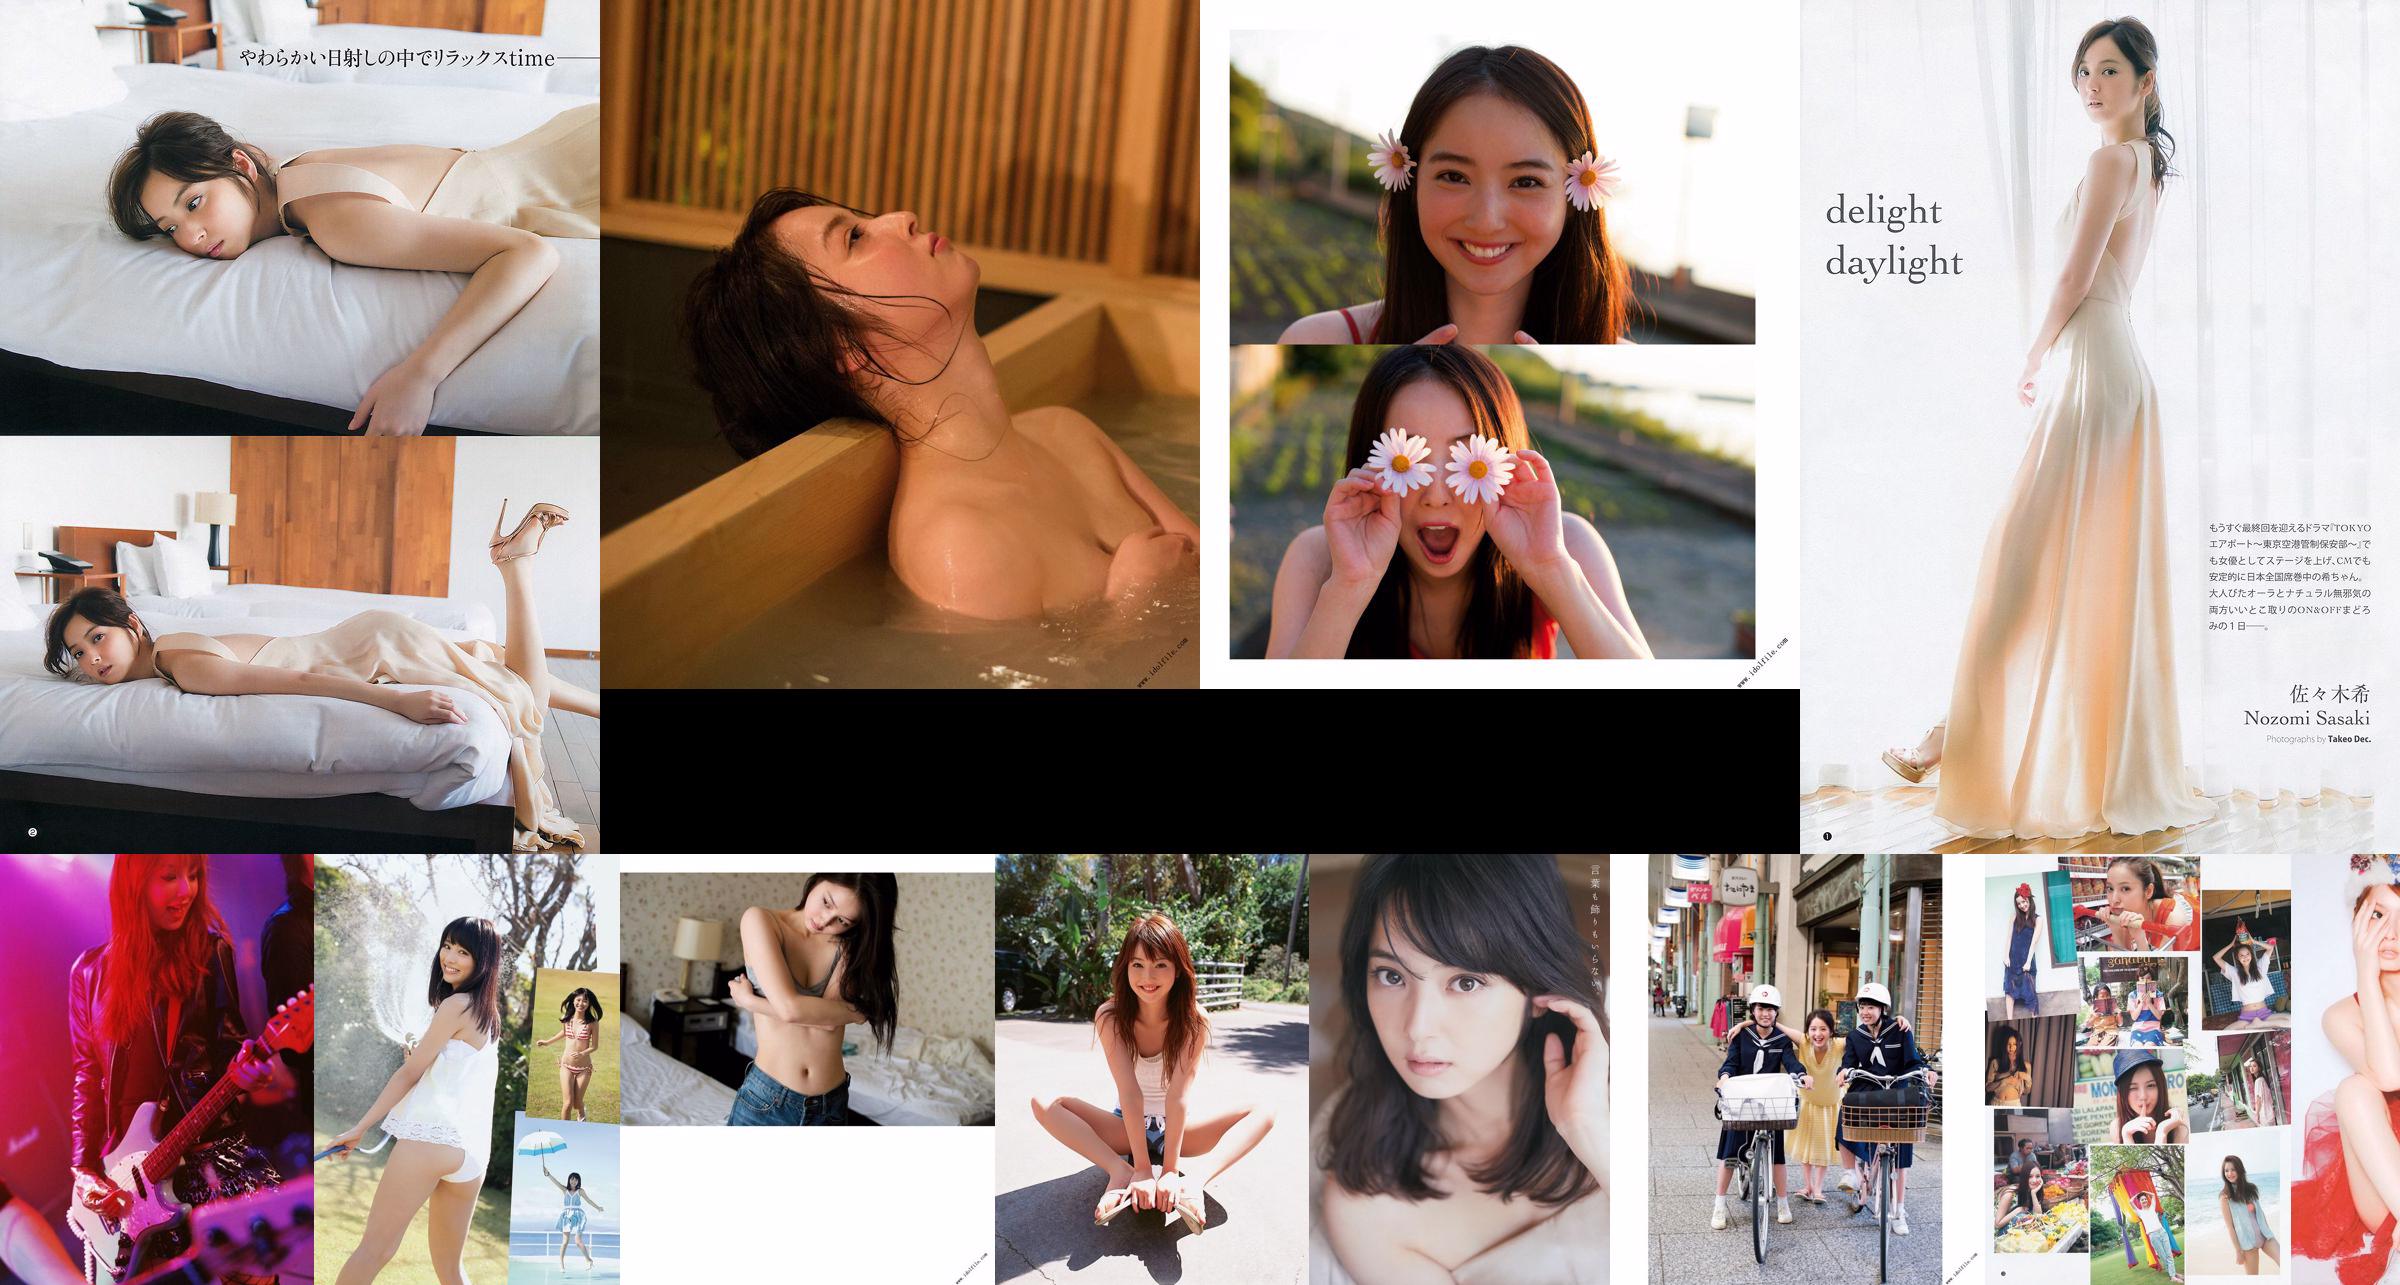 Nozomi Sasaki Meu Ninomiya Minami Sengoku [Tygodniowy Młody Skok] 2013 No.40 Photo No.ea9105 Strona 9